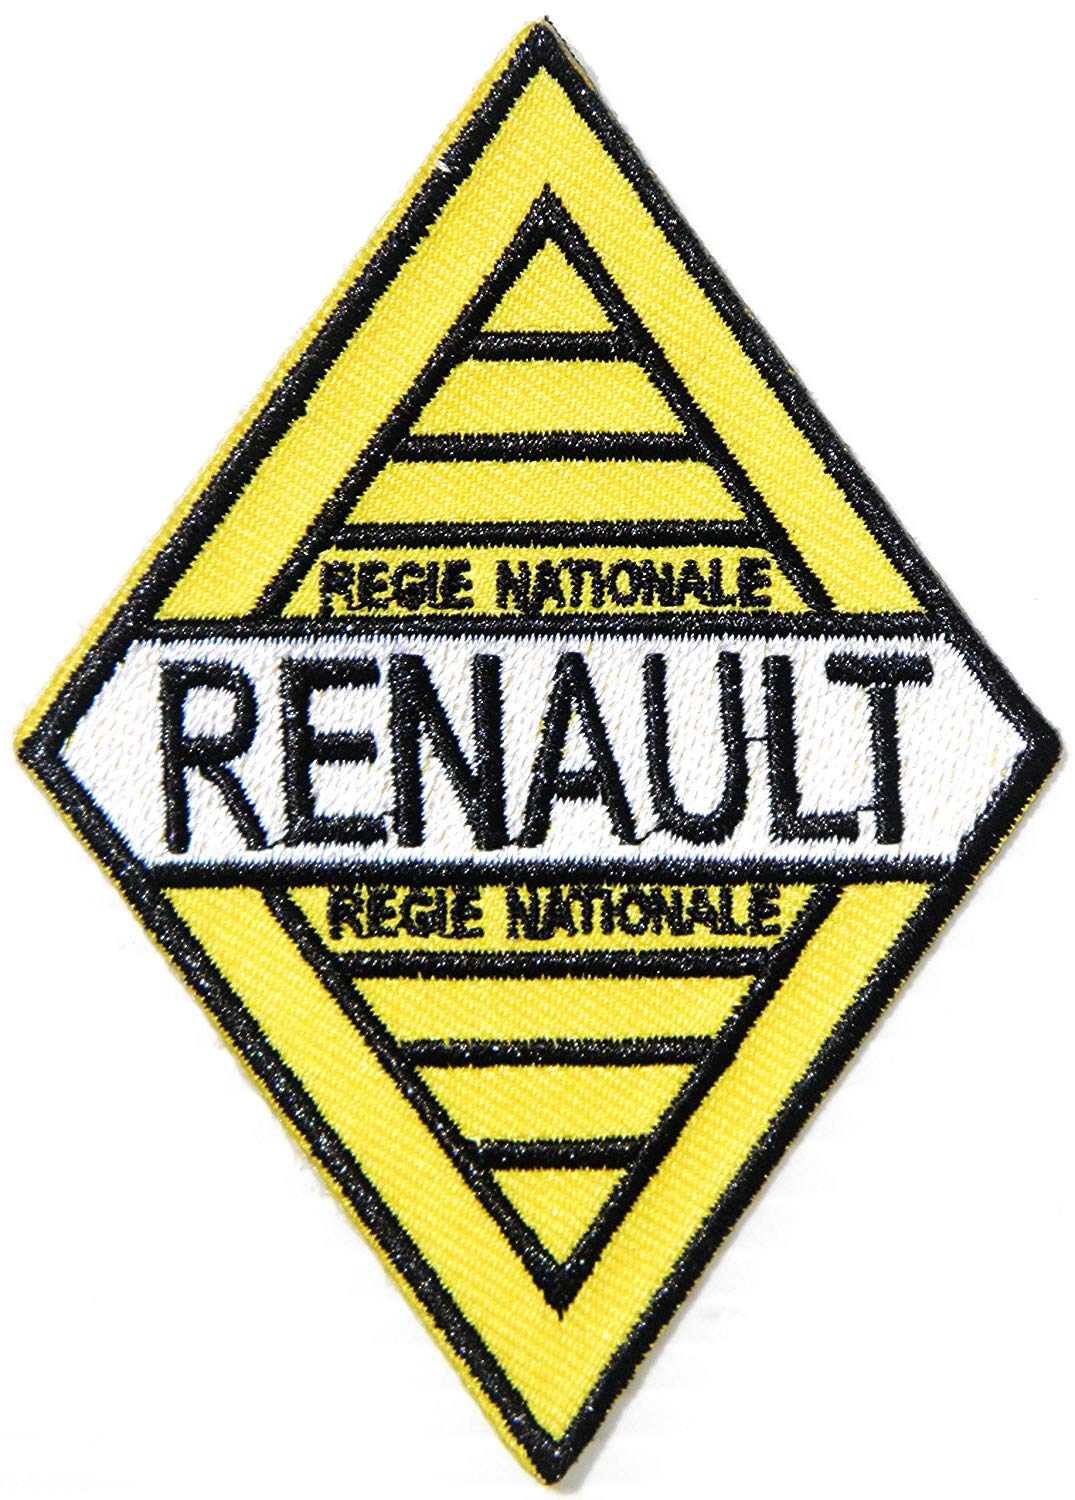 Renault Book